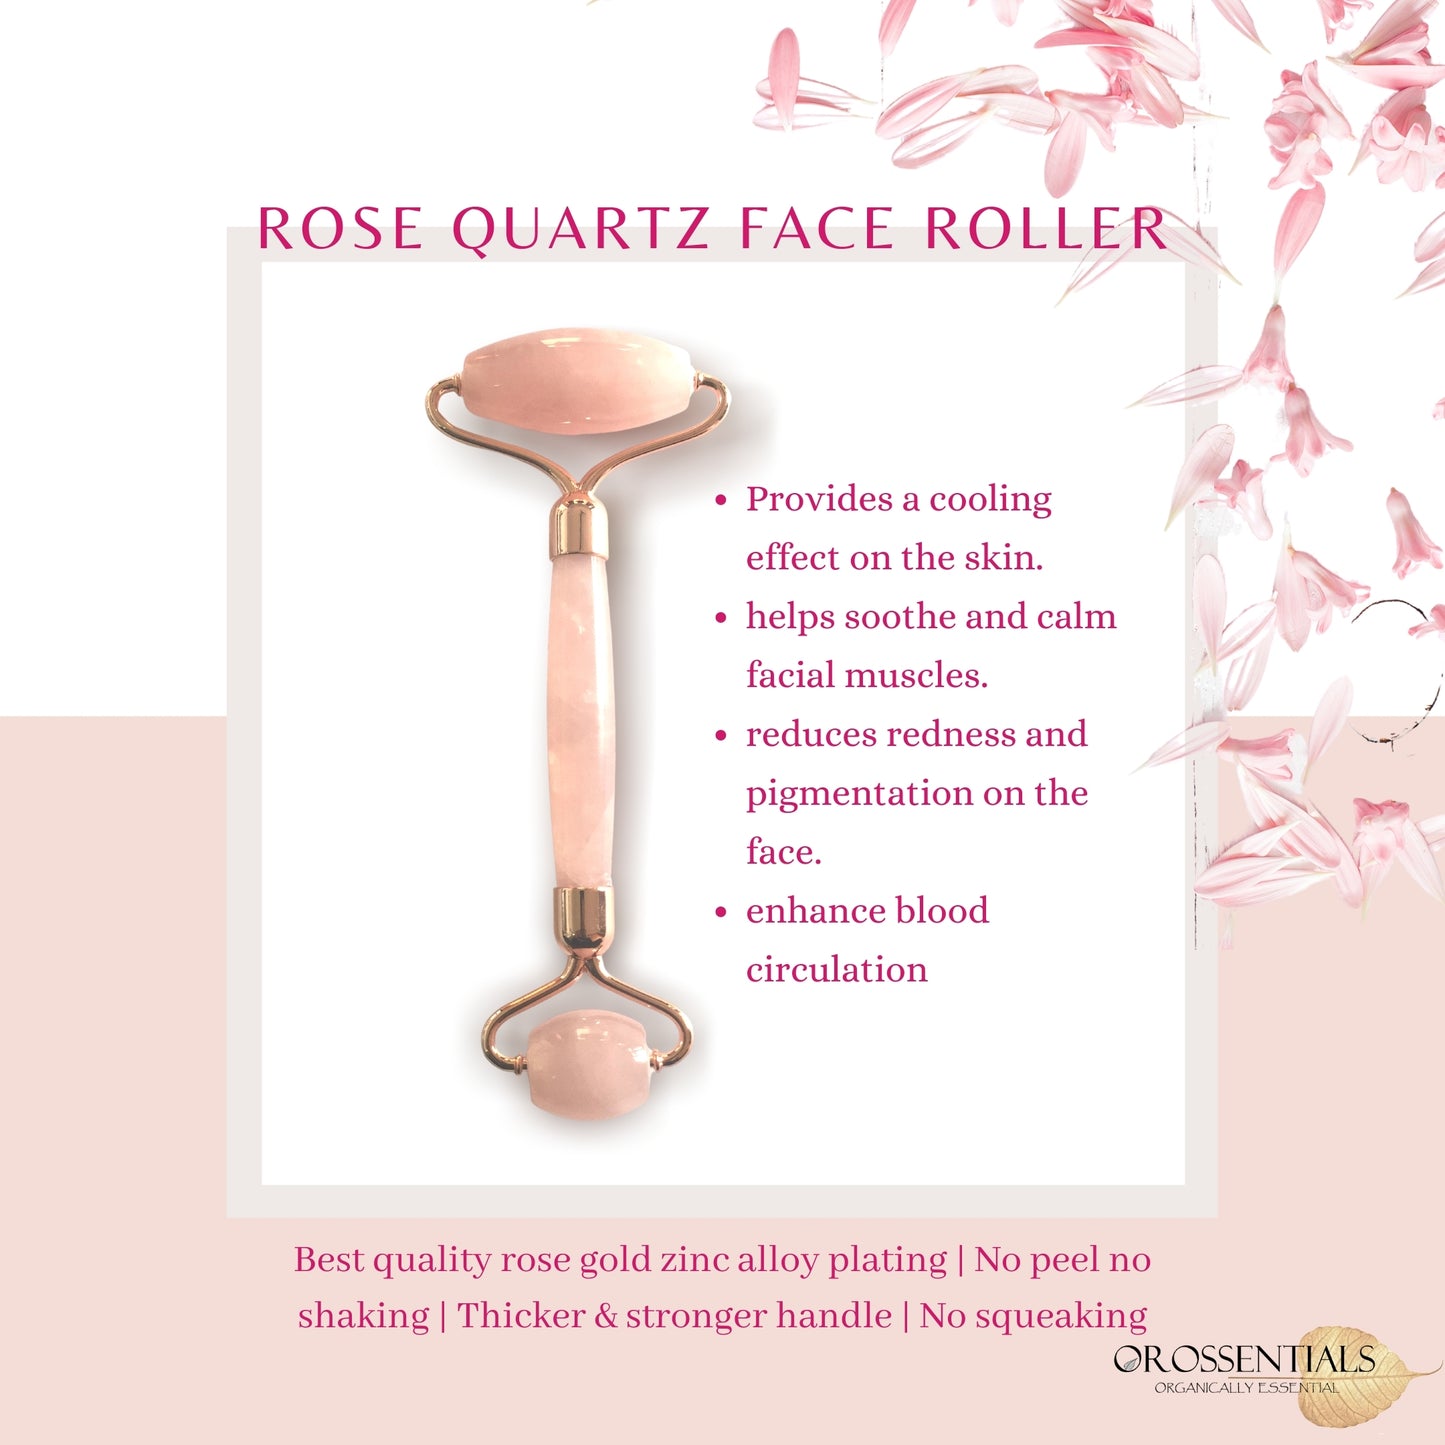 Rose quartz Face roller